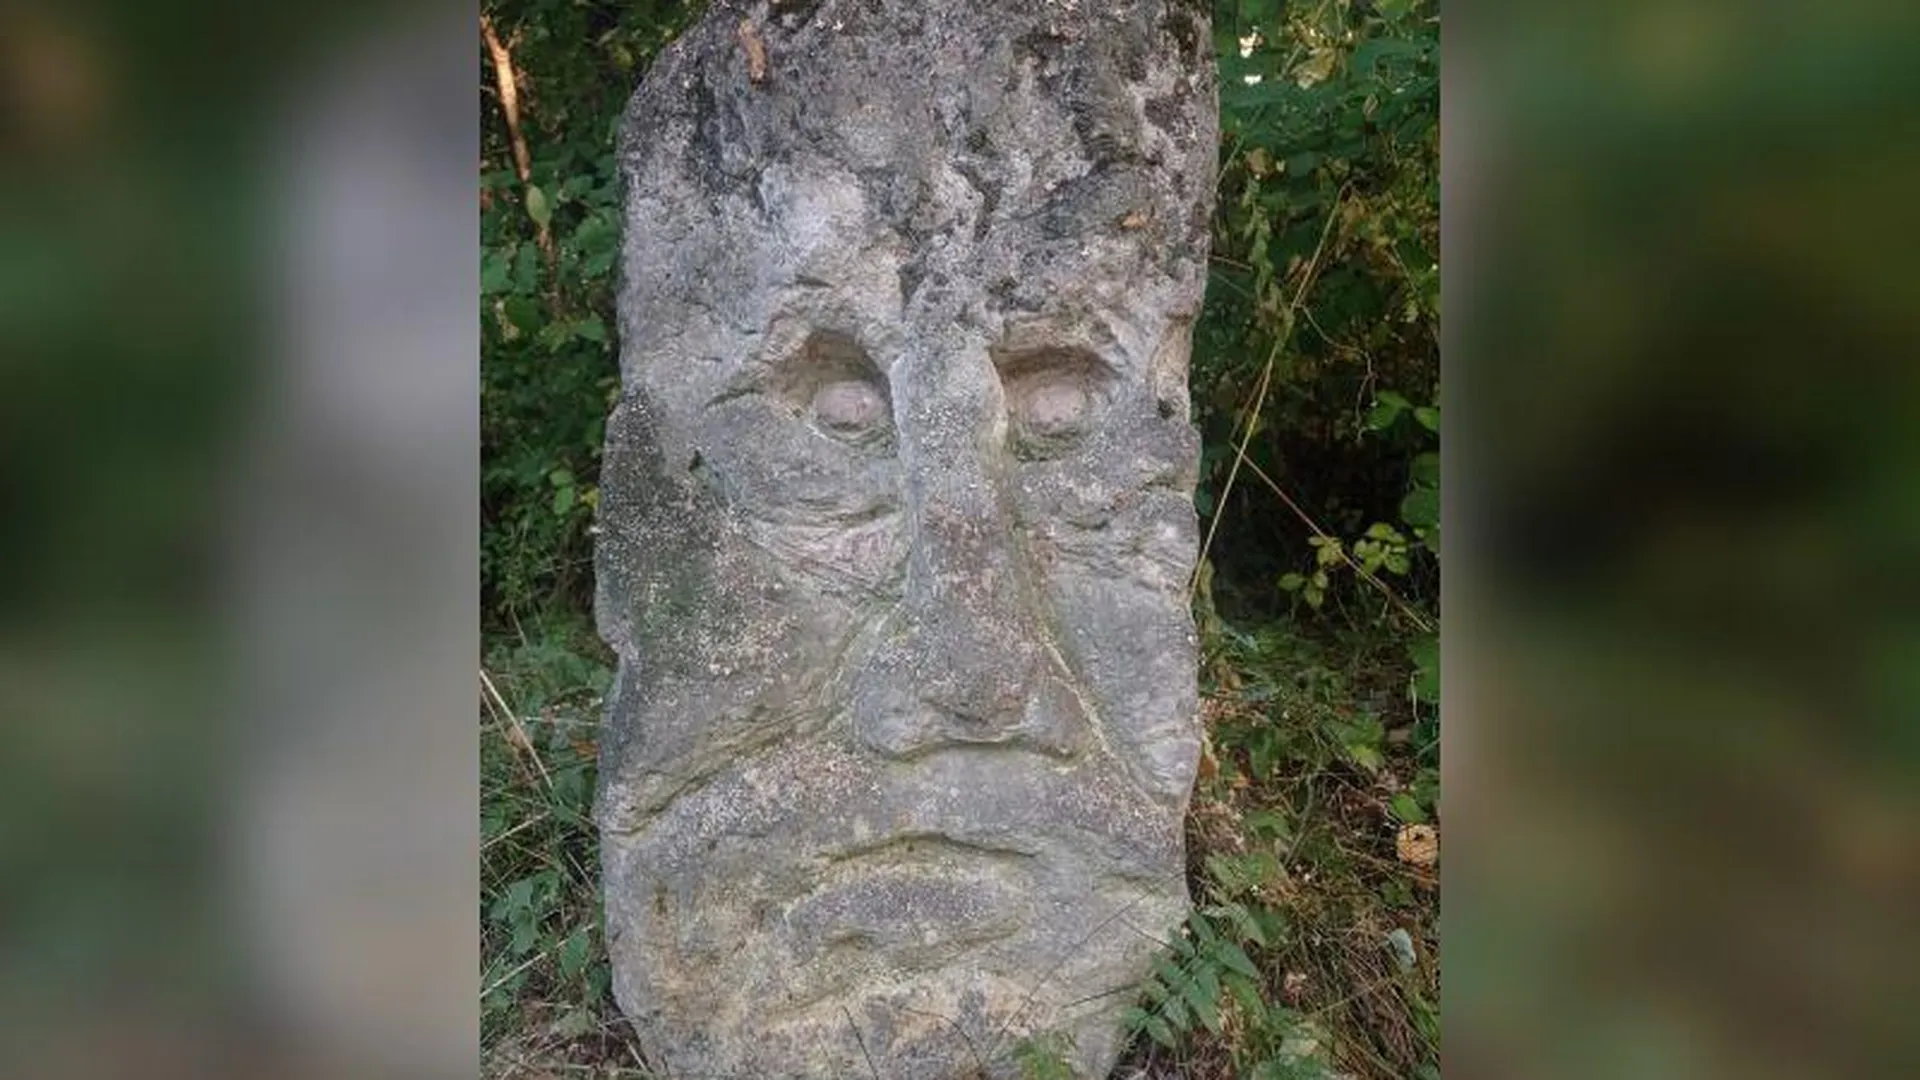 Камень с человеческим лицом озадачил жителей Истры